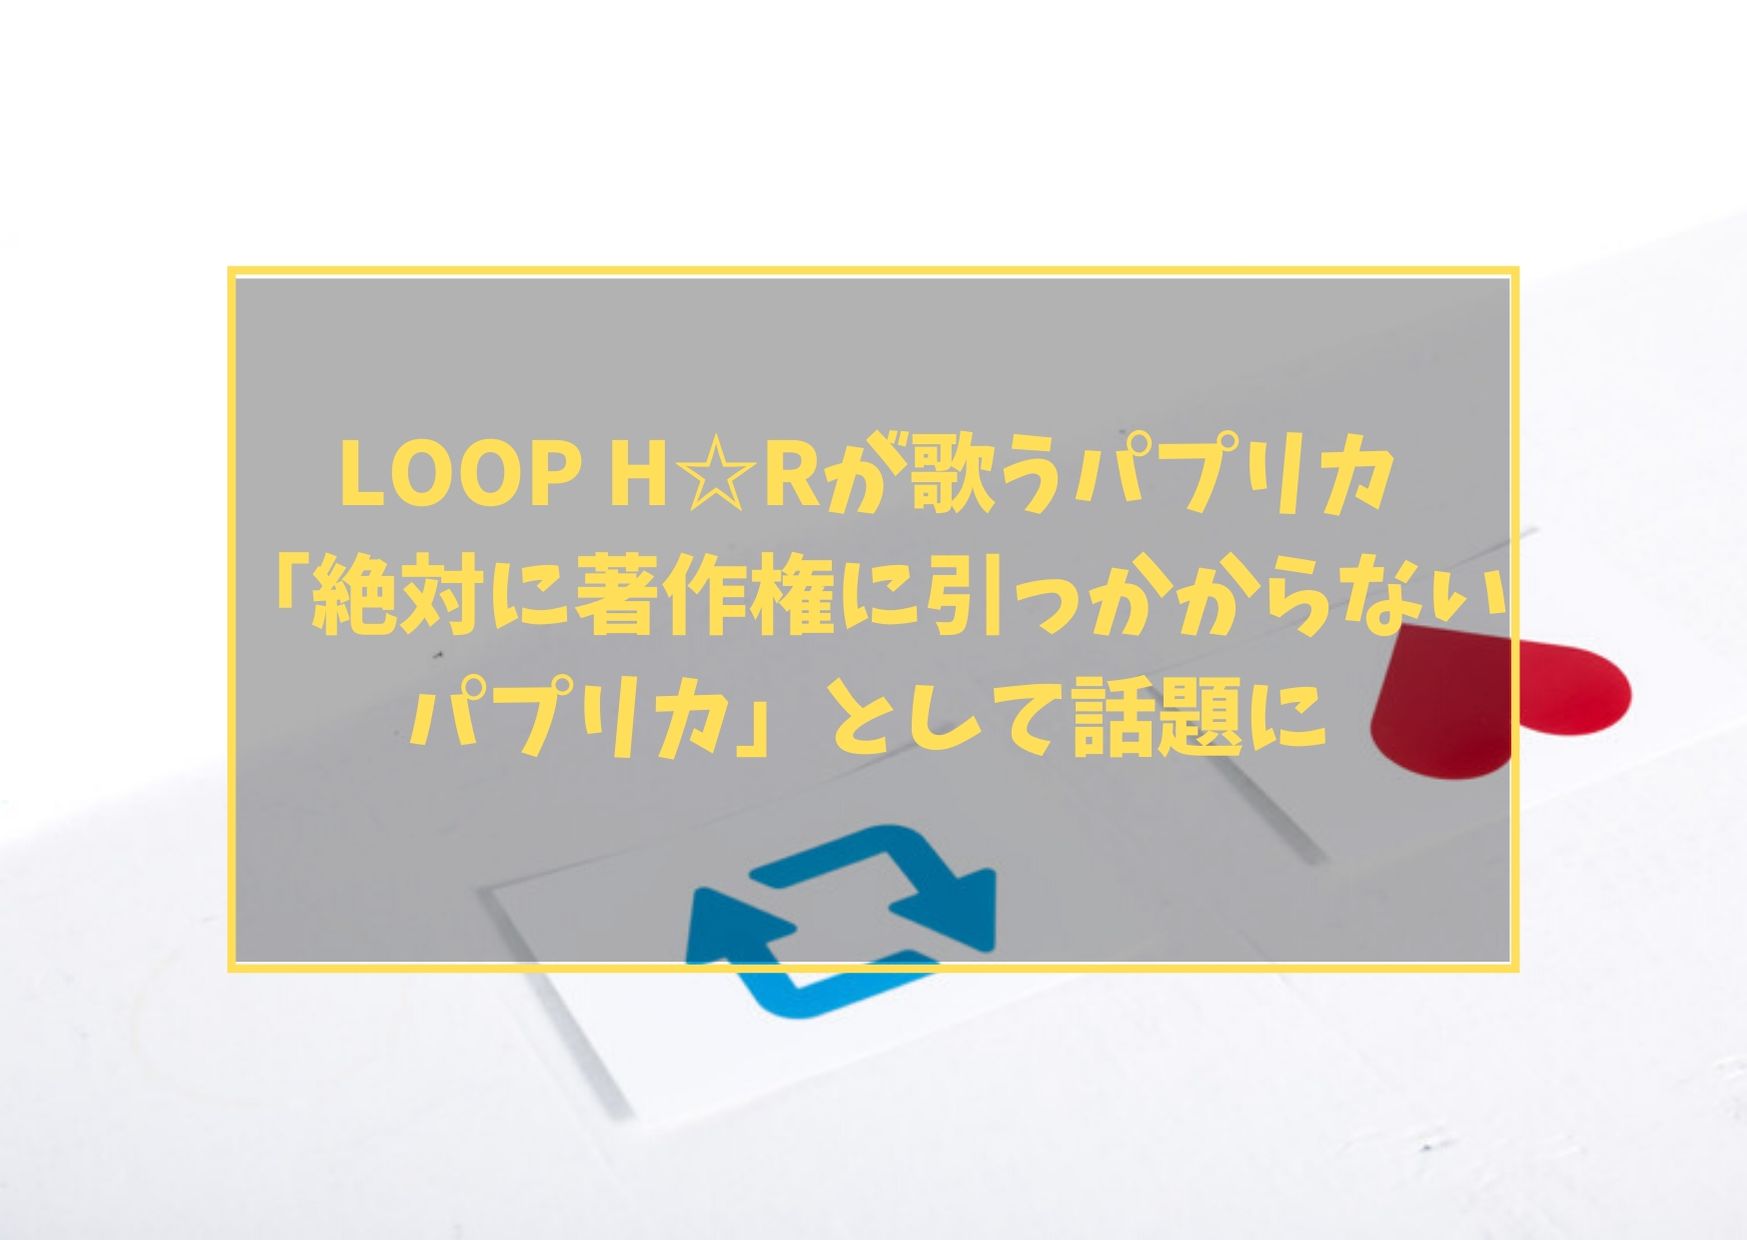 loop h rが歌うパプリカ 絶対に著作権に引っかからないパプリカ として